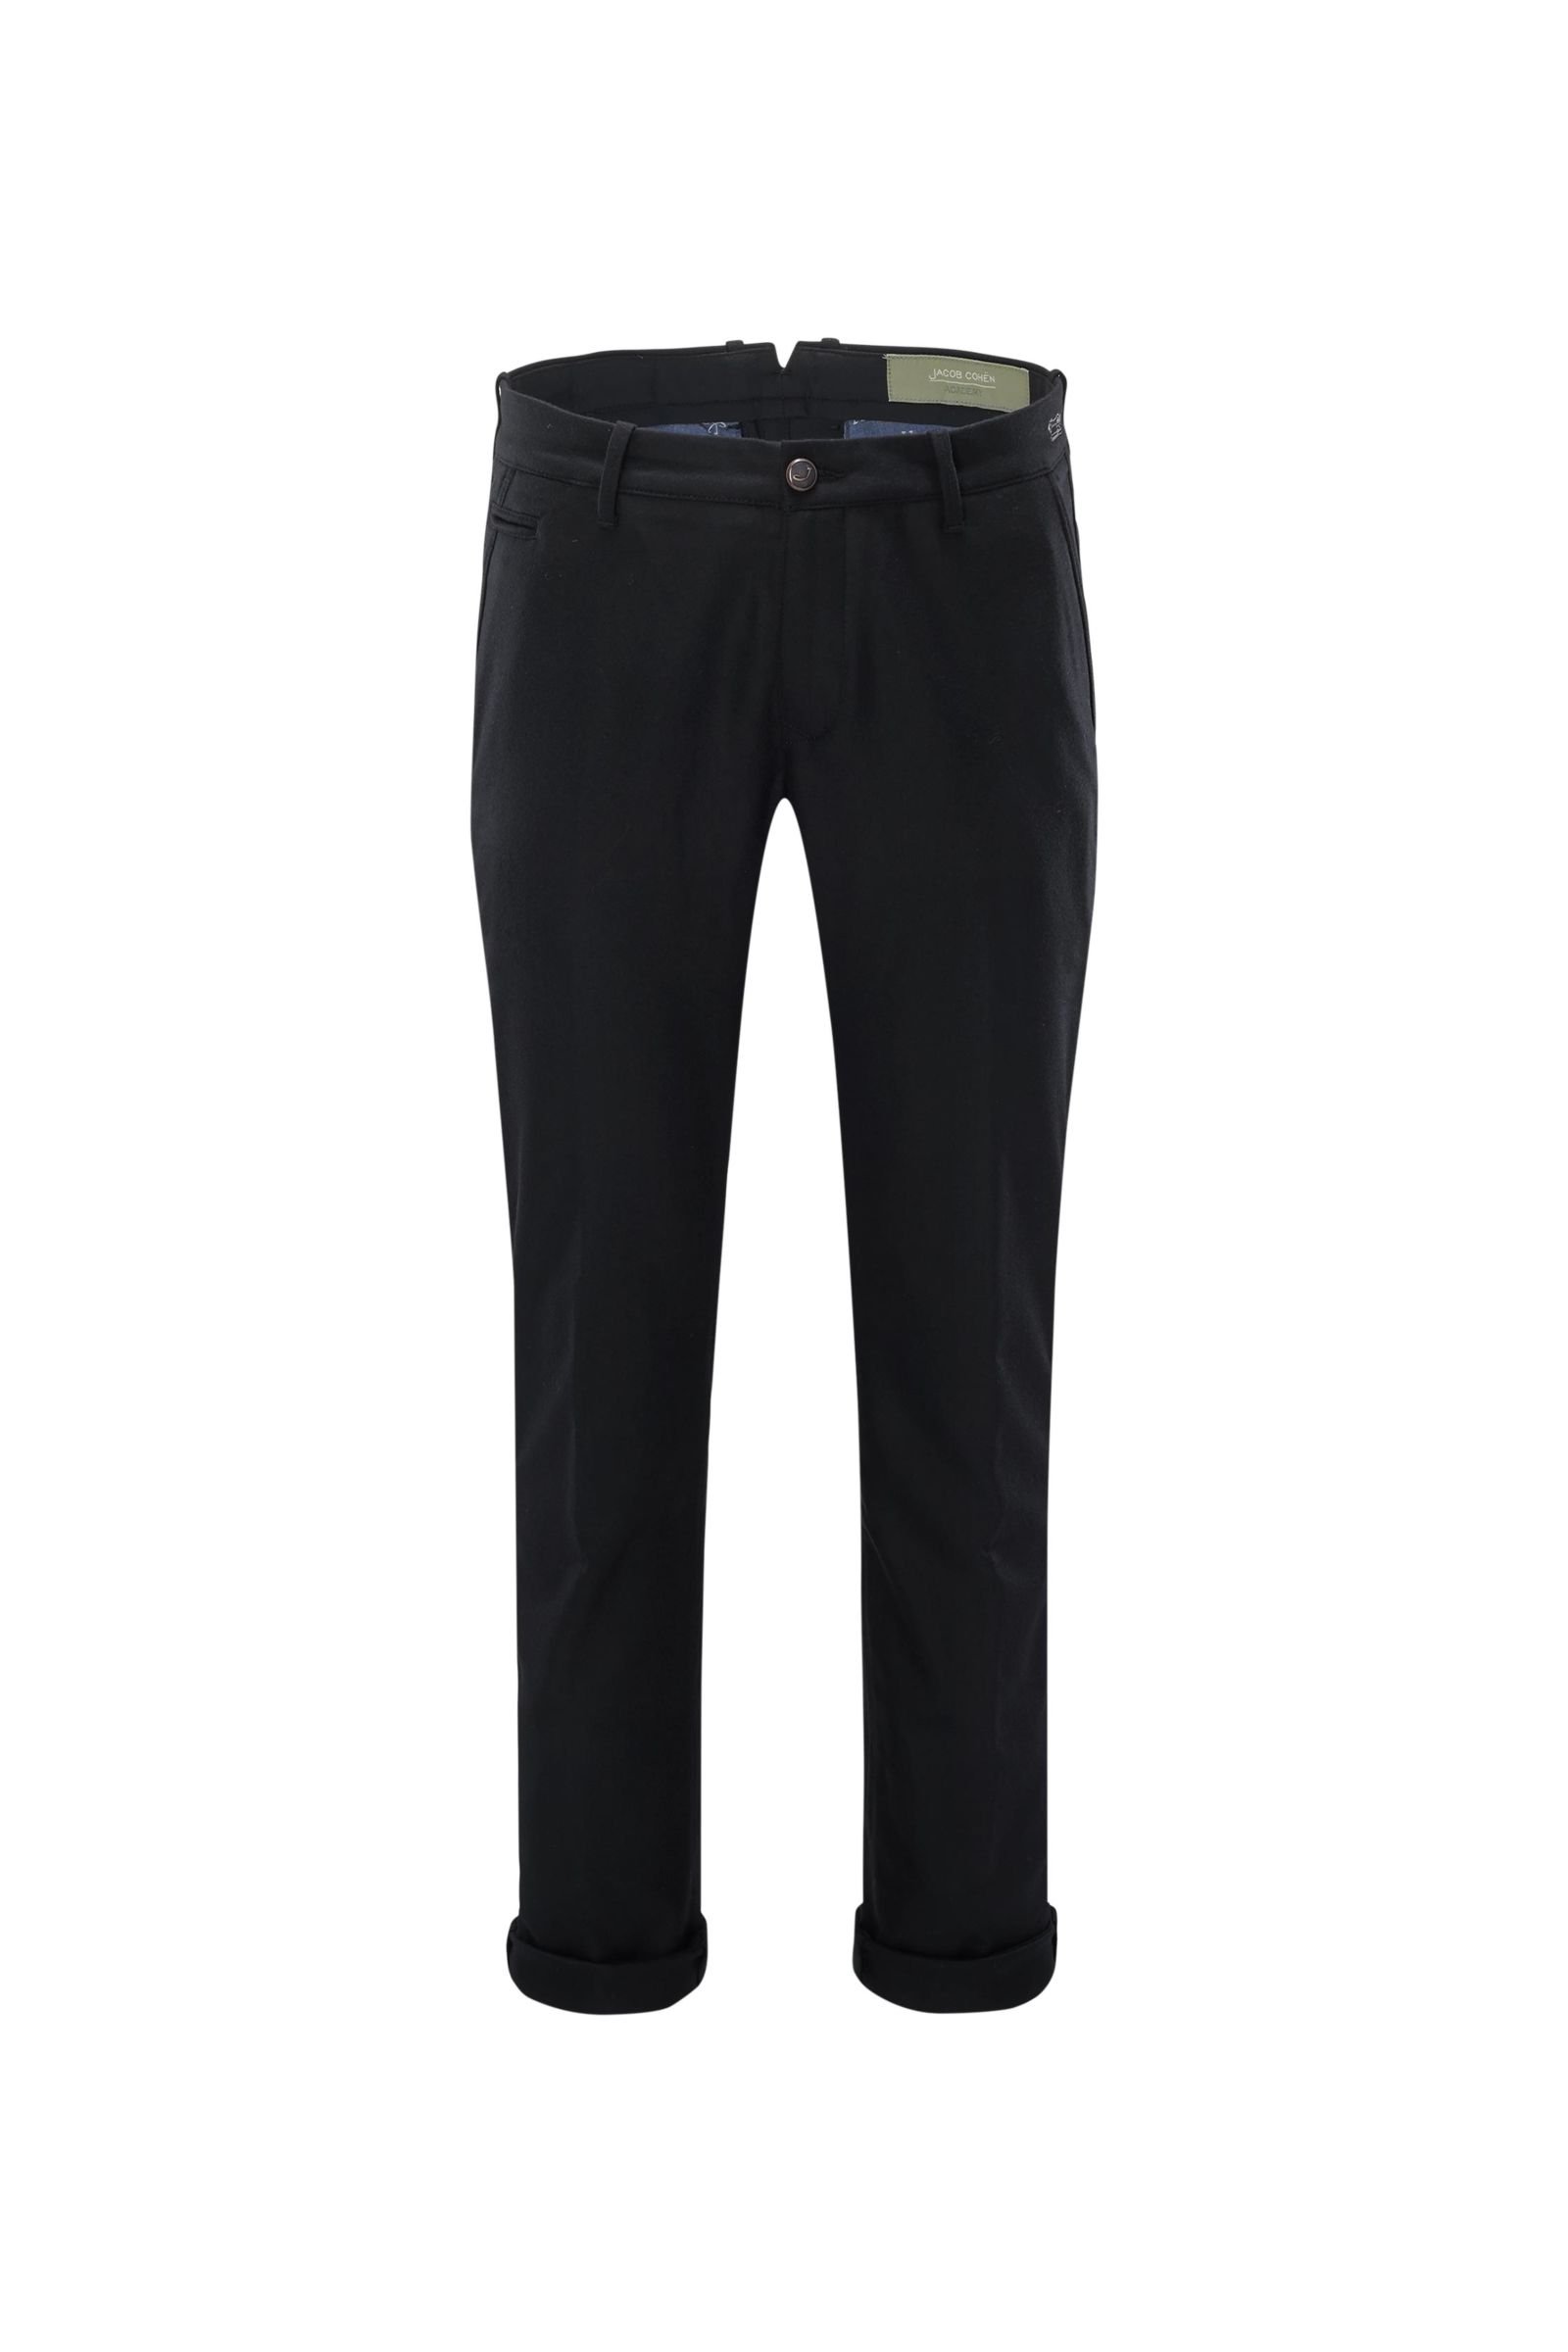 Wool trousers 'J666 Wool B Comfort Slim Fit' black